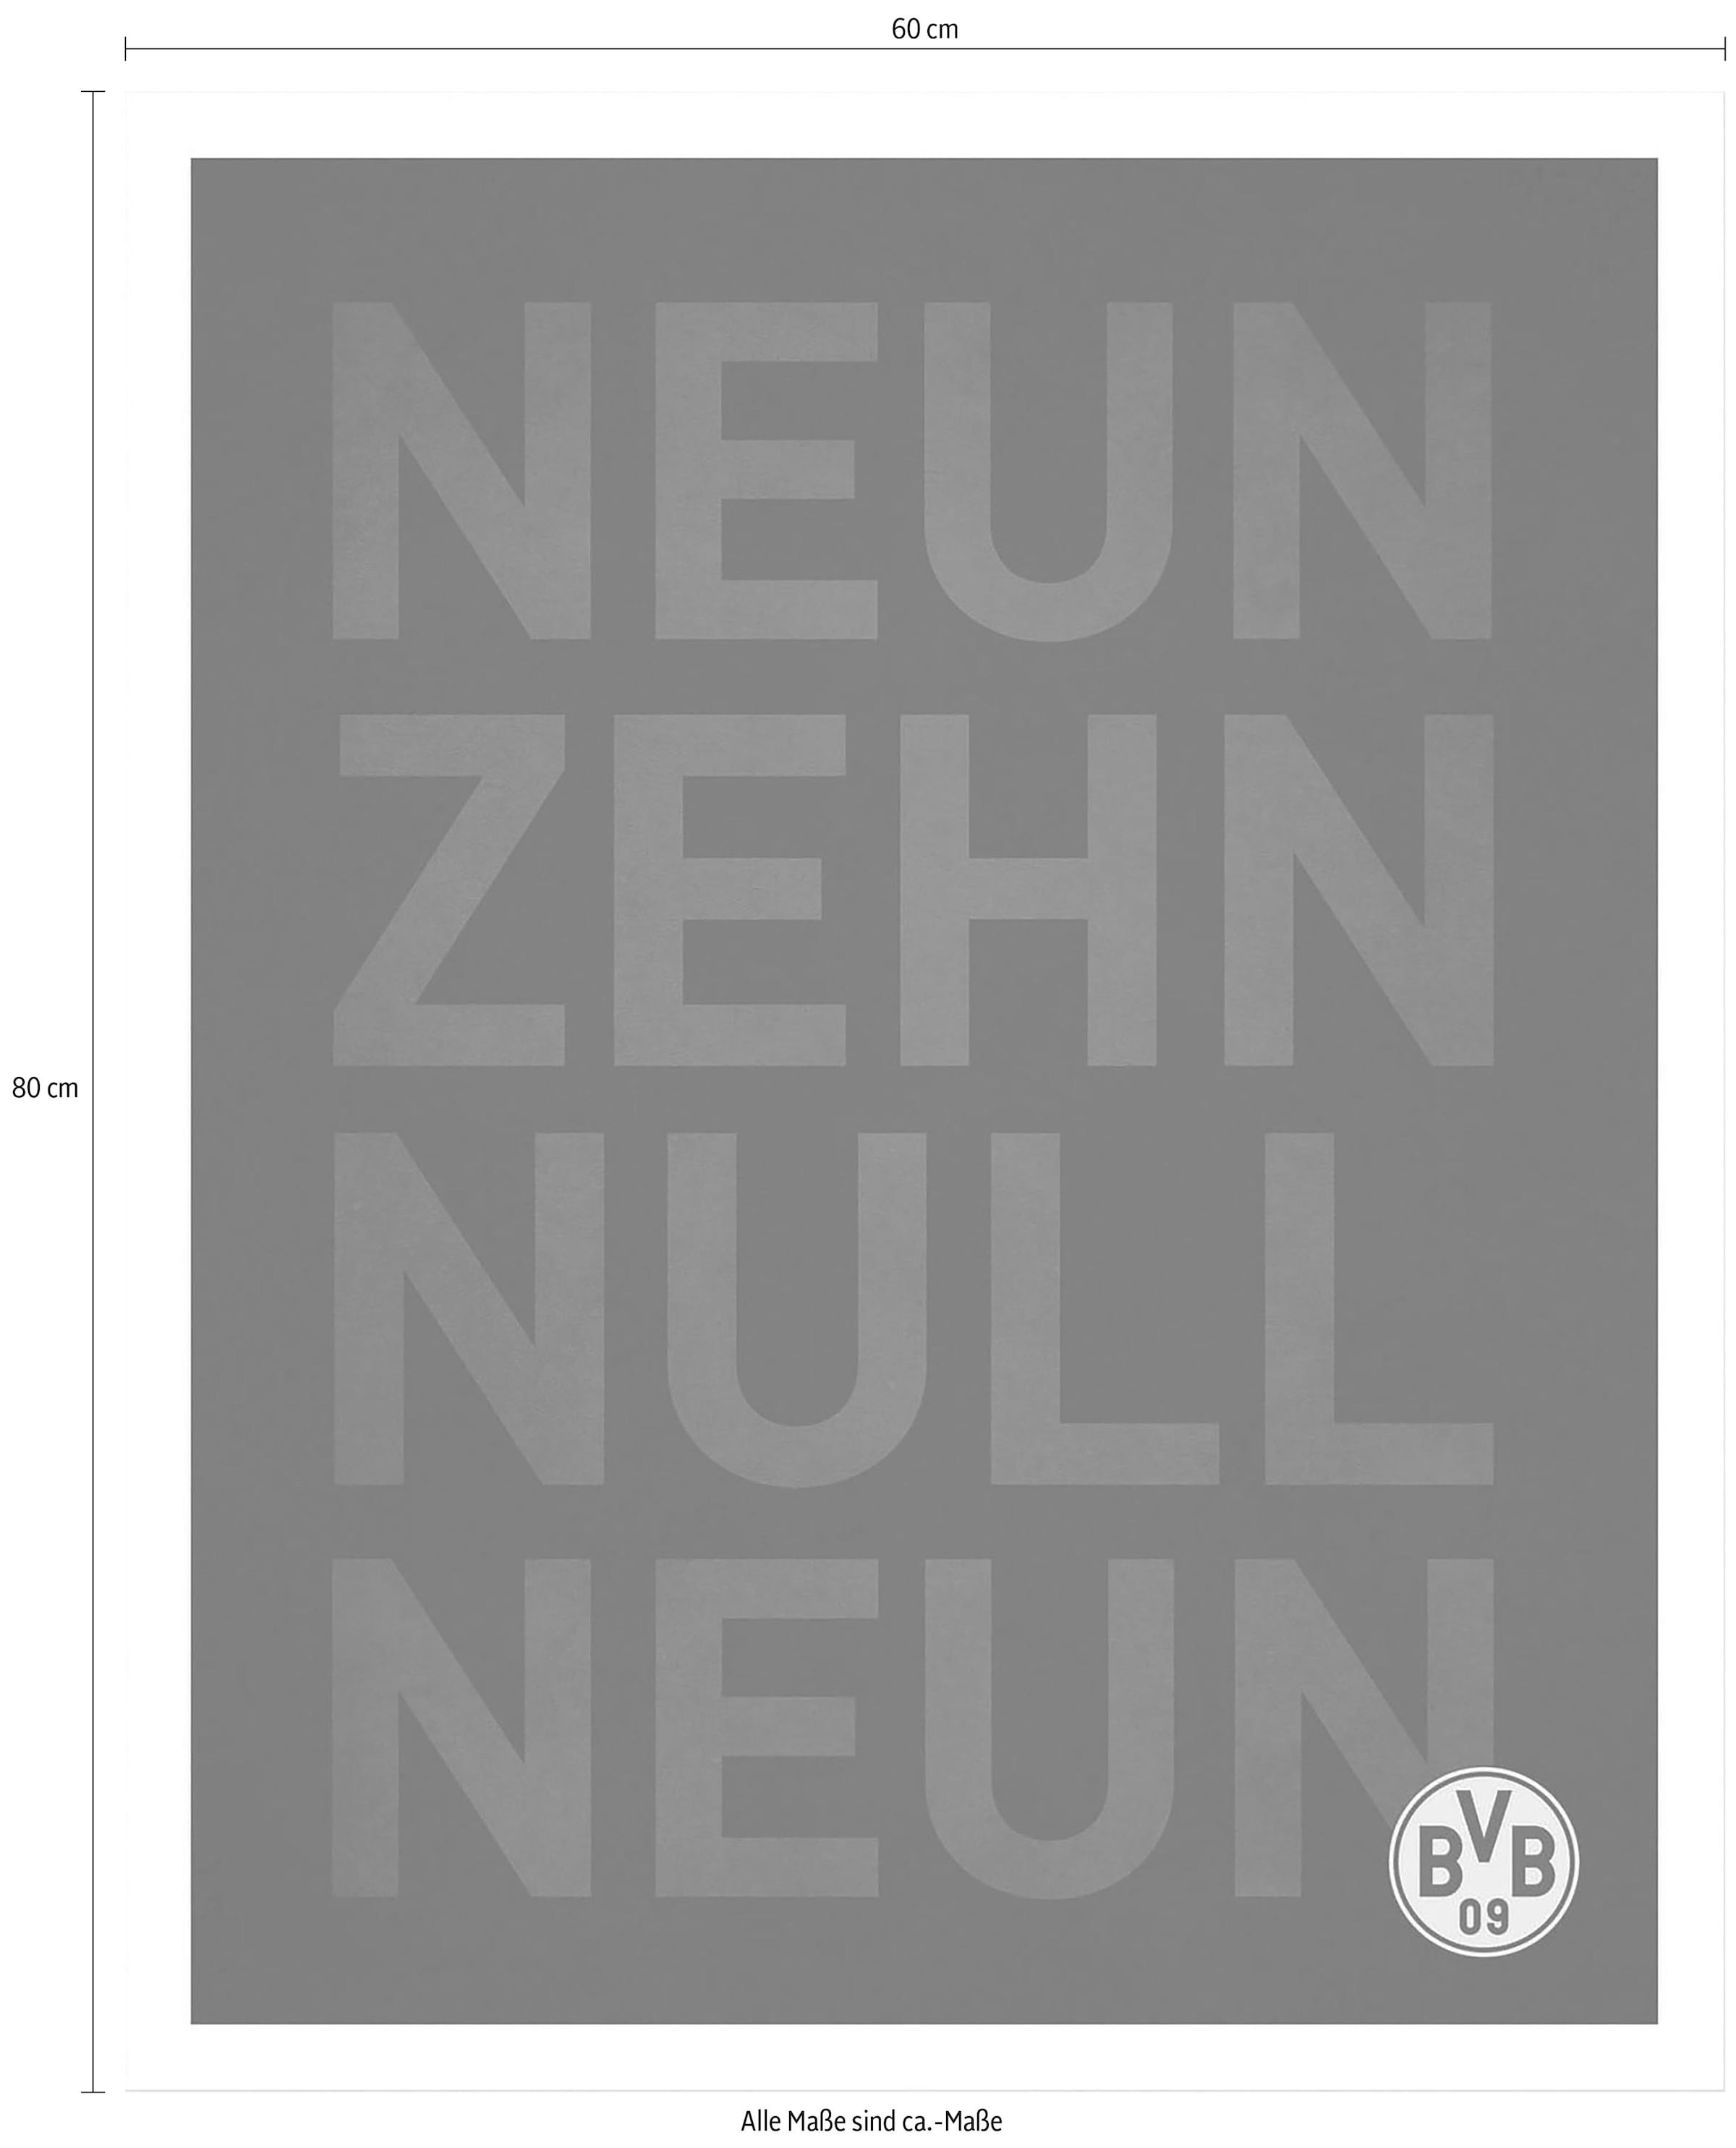 Wall-Art Poster »BVB Neun Zehn Null Neun«, Poster, Wandbild, Bild,  Wandposter bestellen im OTTO Online Shop